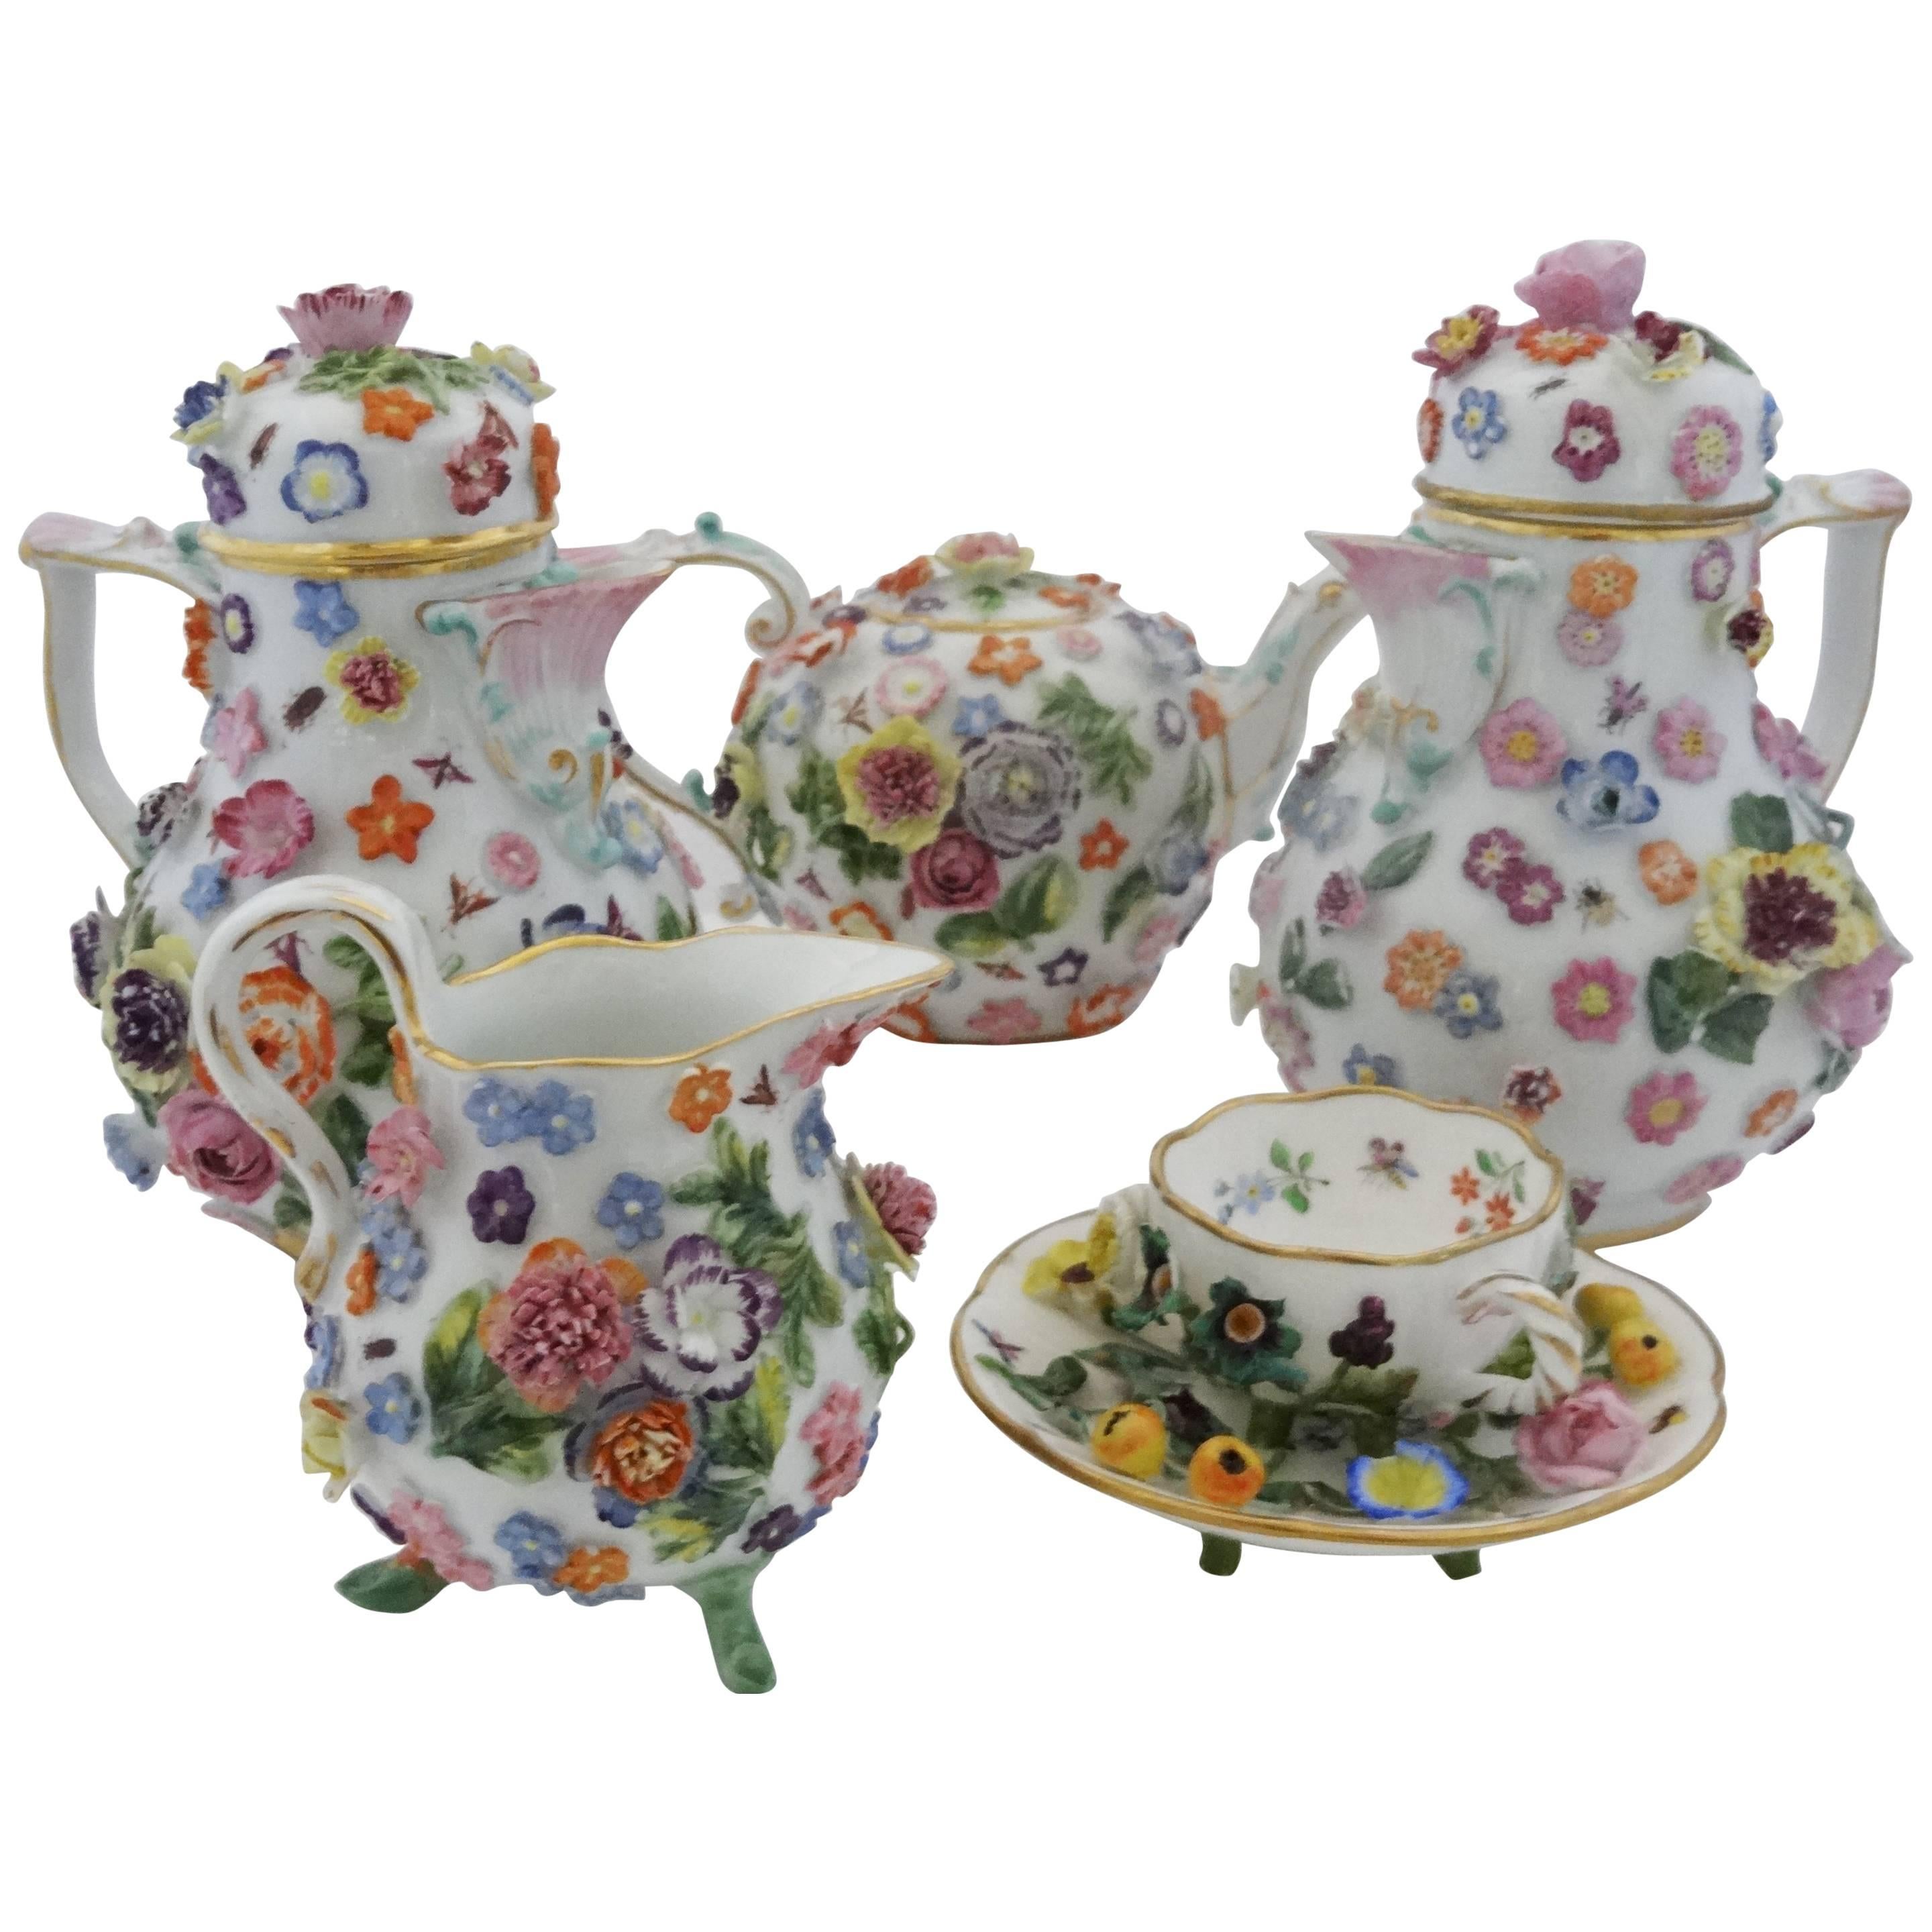 Meissen Porcelain Floral Tea Service Provenance Chatsworth House Attic Sale